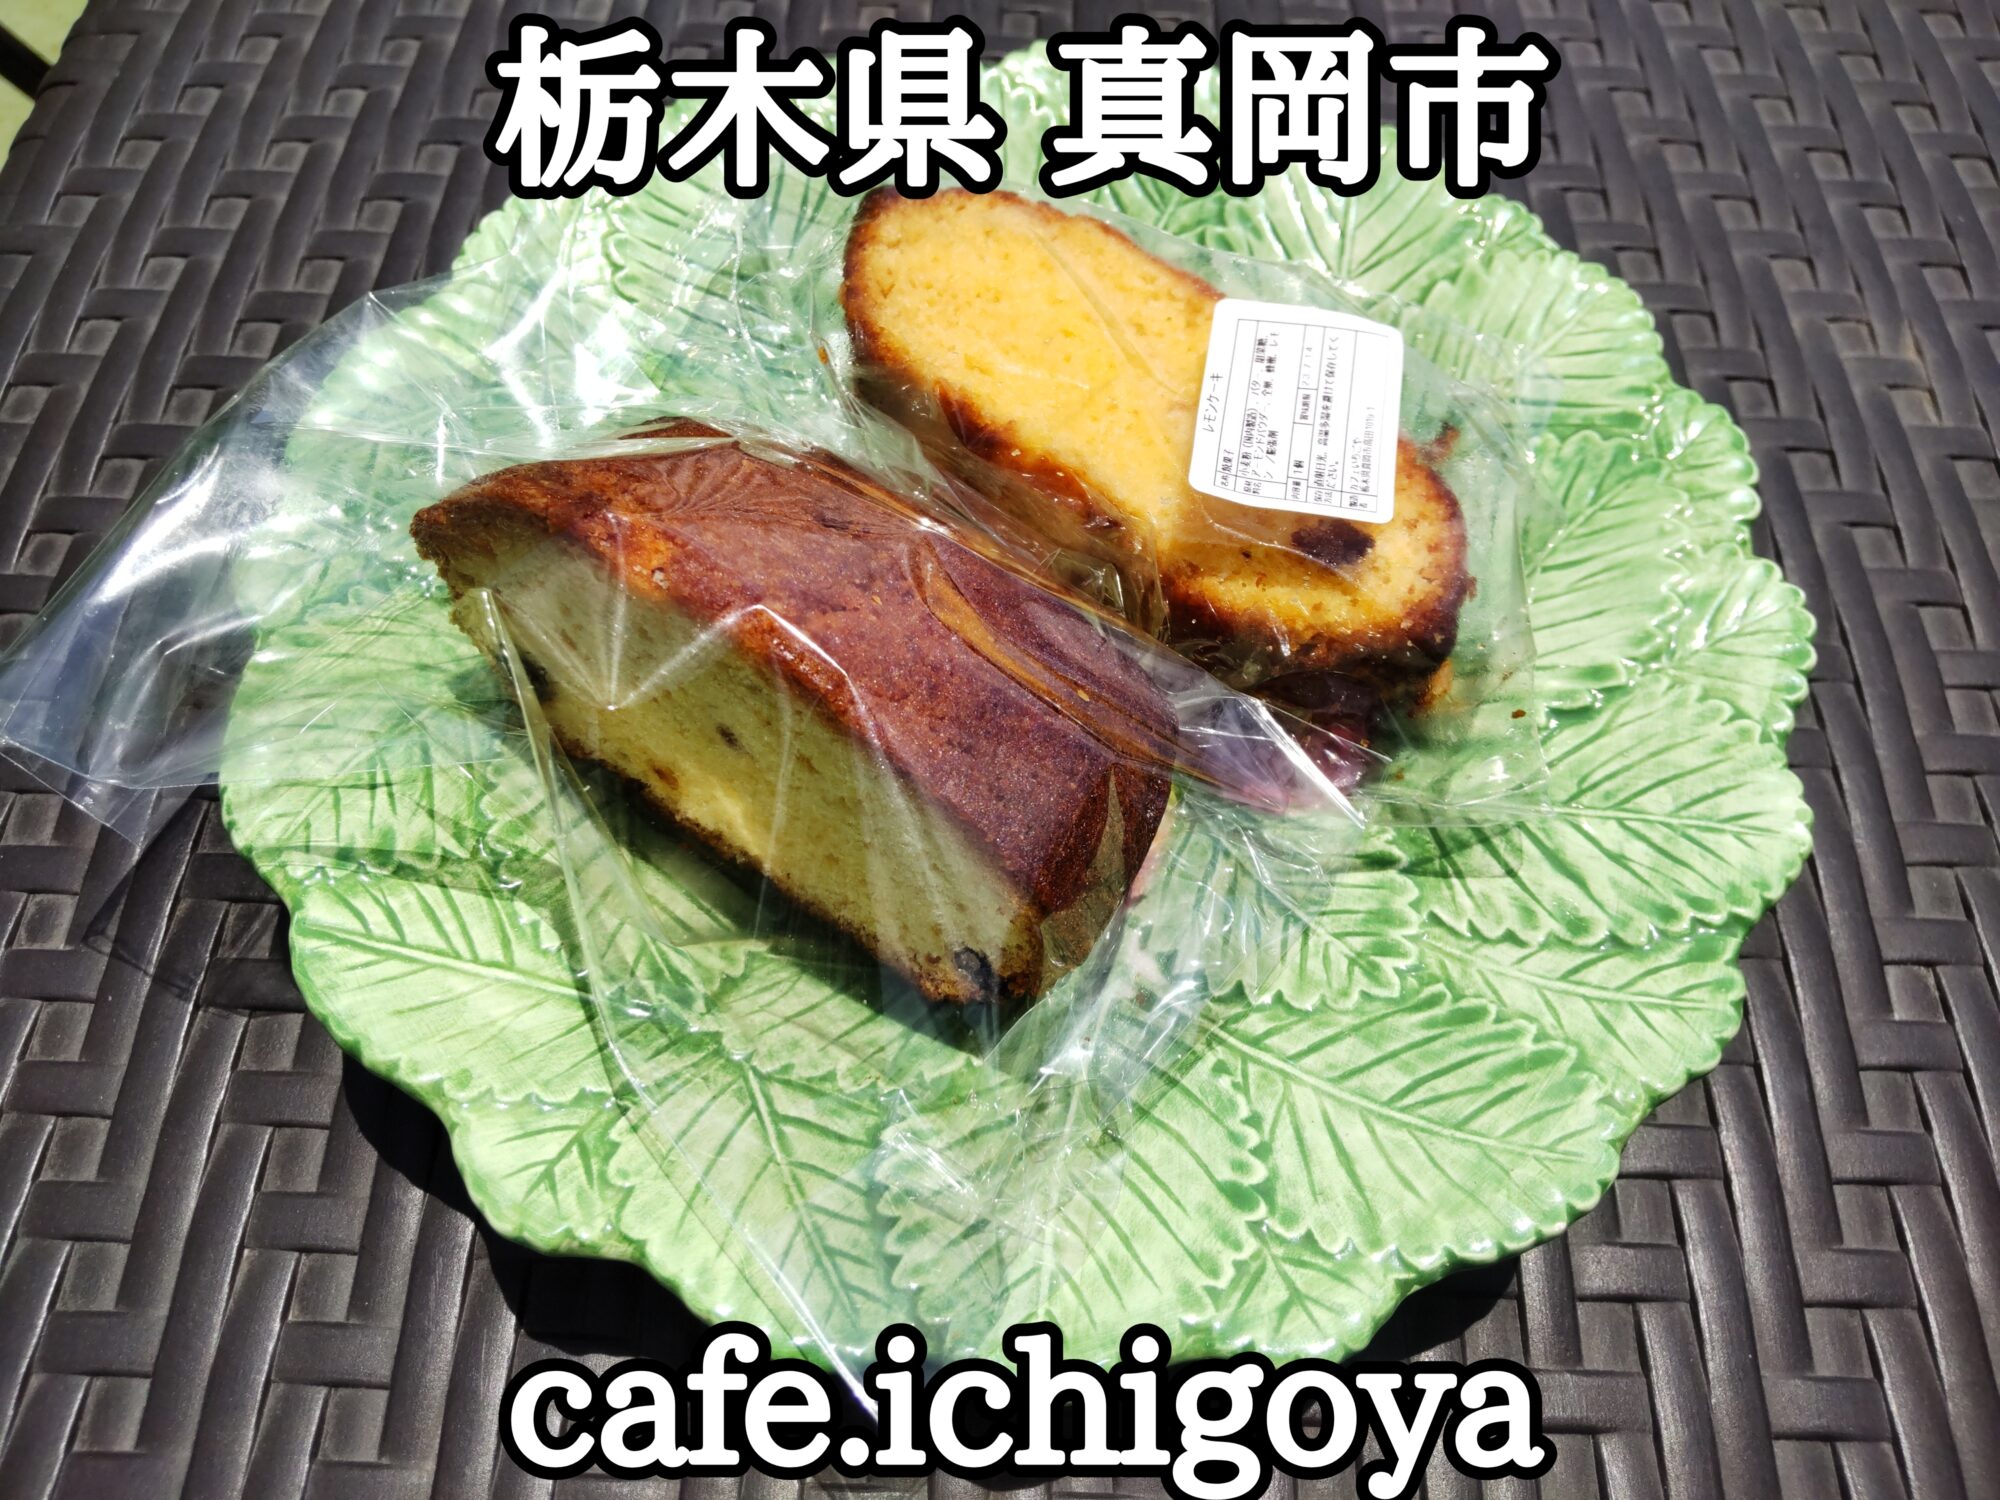 【栃木県】【真岡市】「cafe.ichigoya」いちごのカフェで美味しいケーキをお外で頂けました